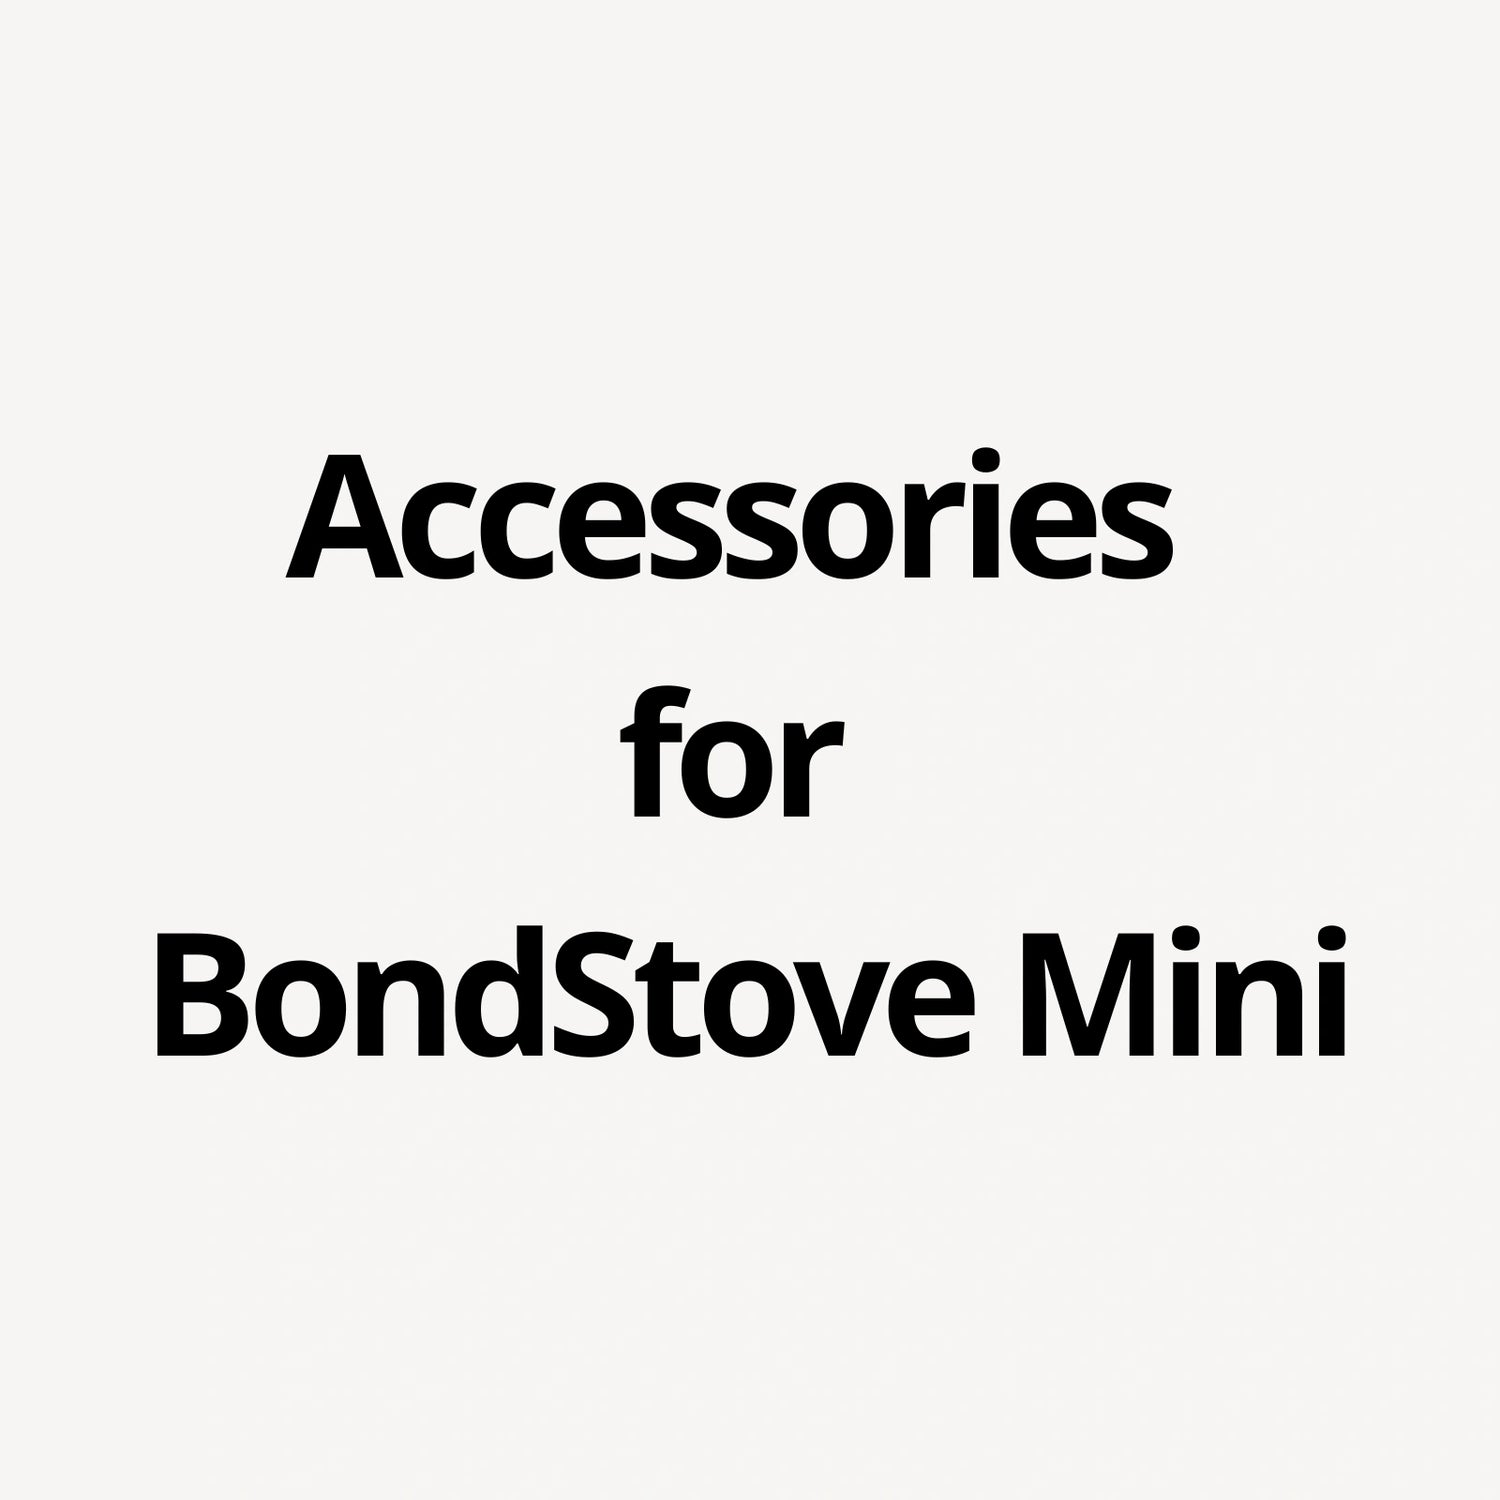 Accessories for BondStove Mini